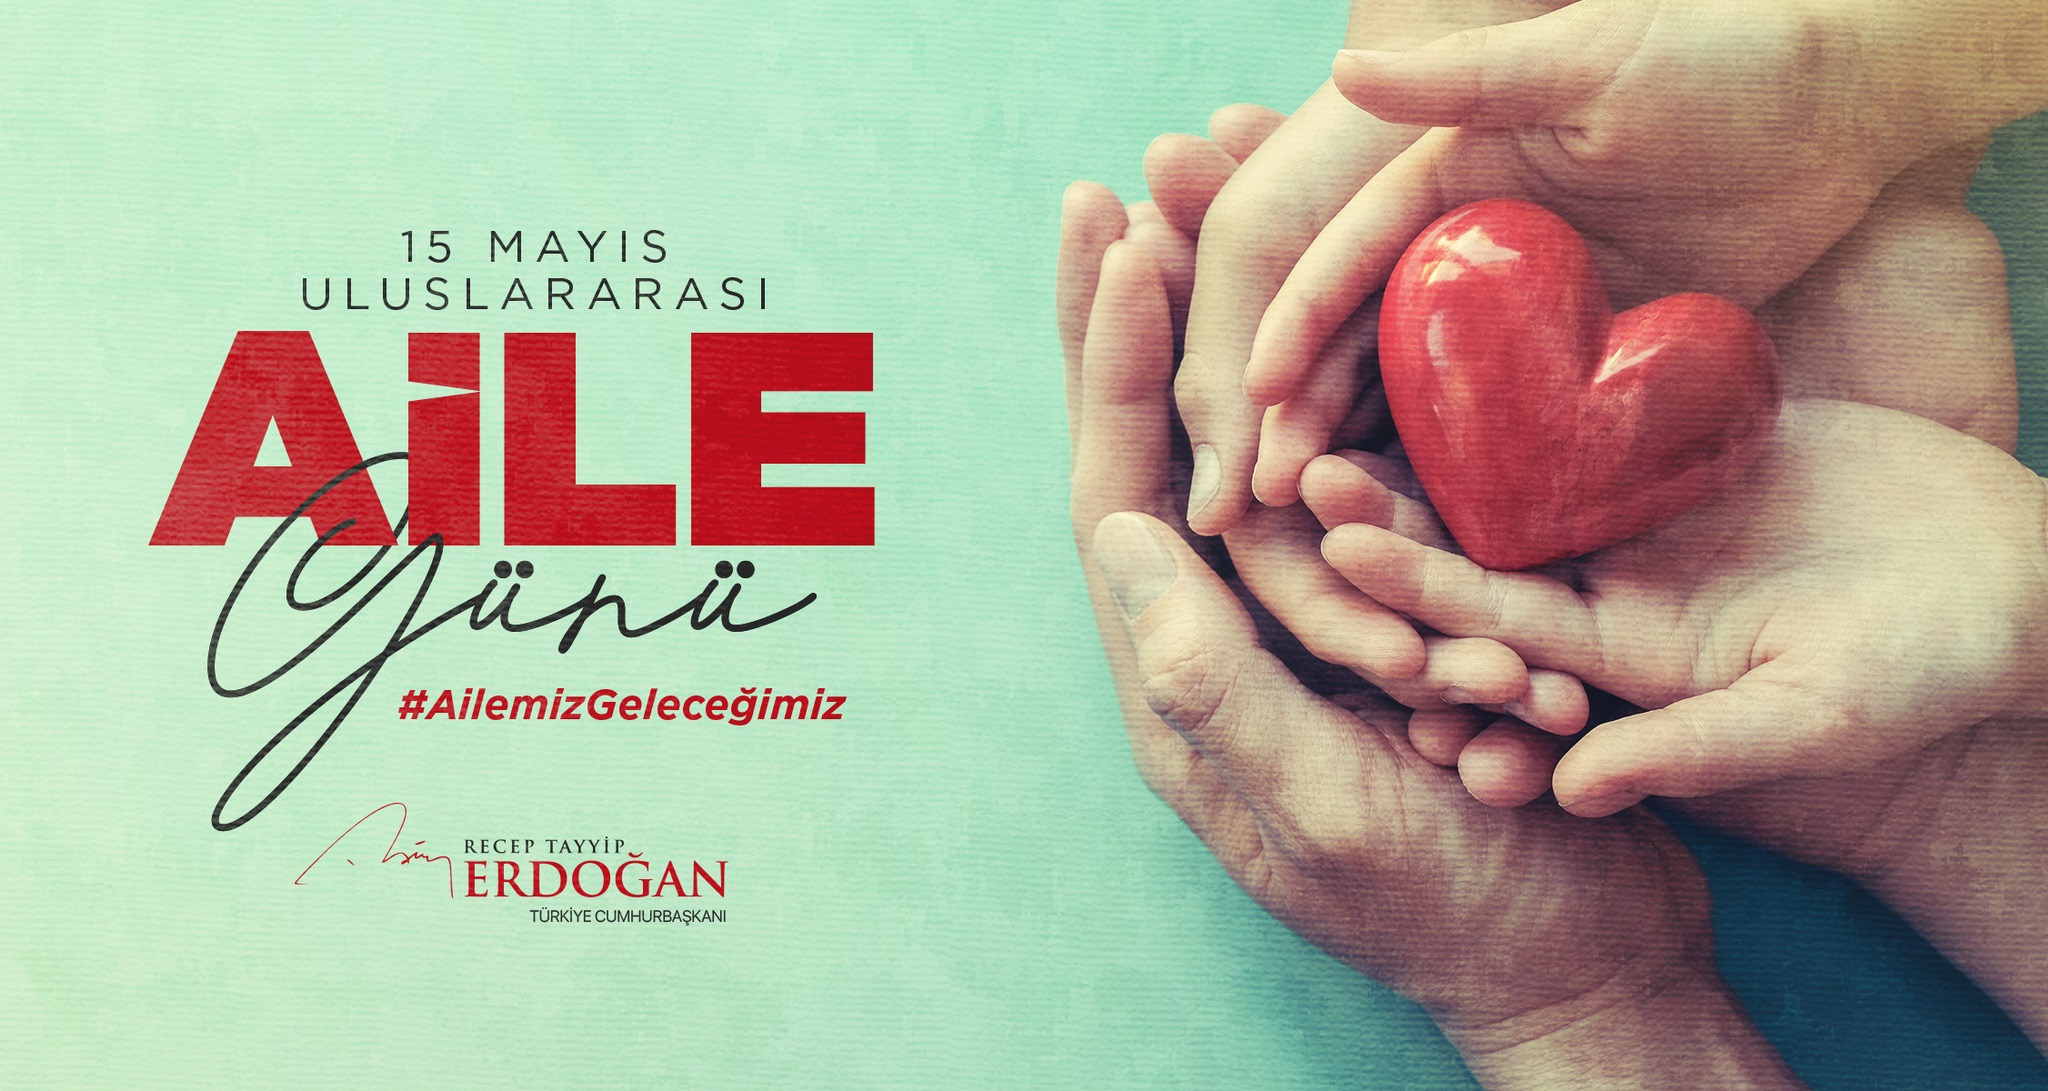 Cumhurbaşkanı Recep Tayyip Erdoğan Uluslararası Aile Günü'nde Mesaj Yayınladı